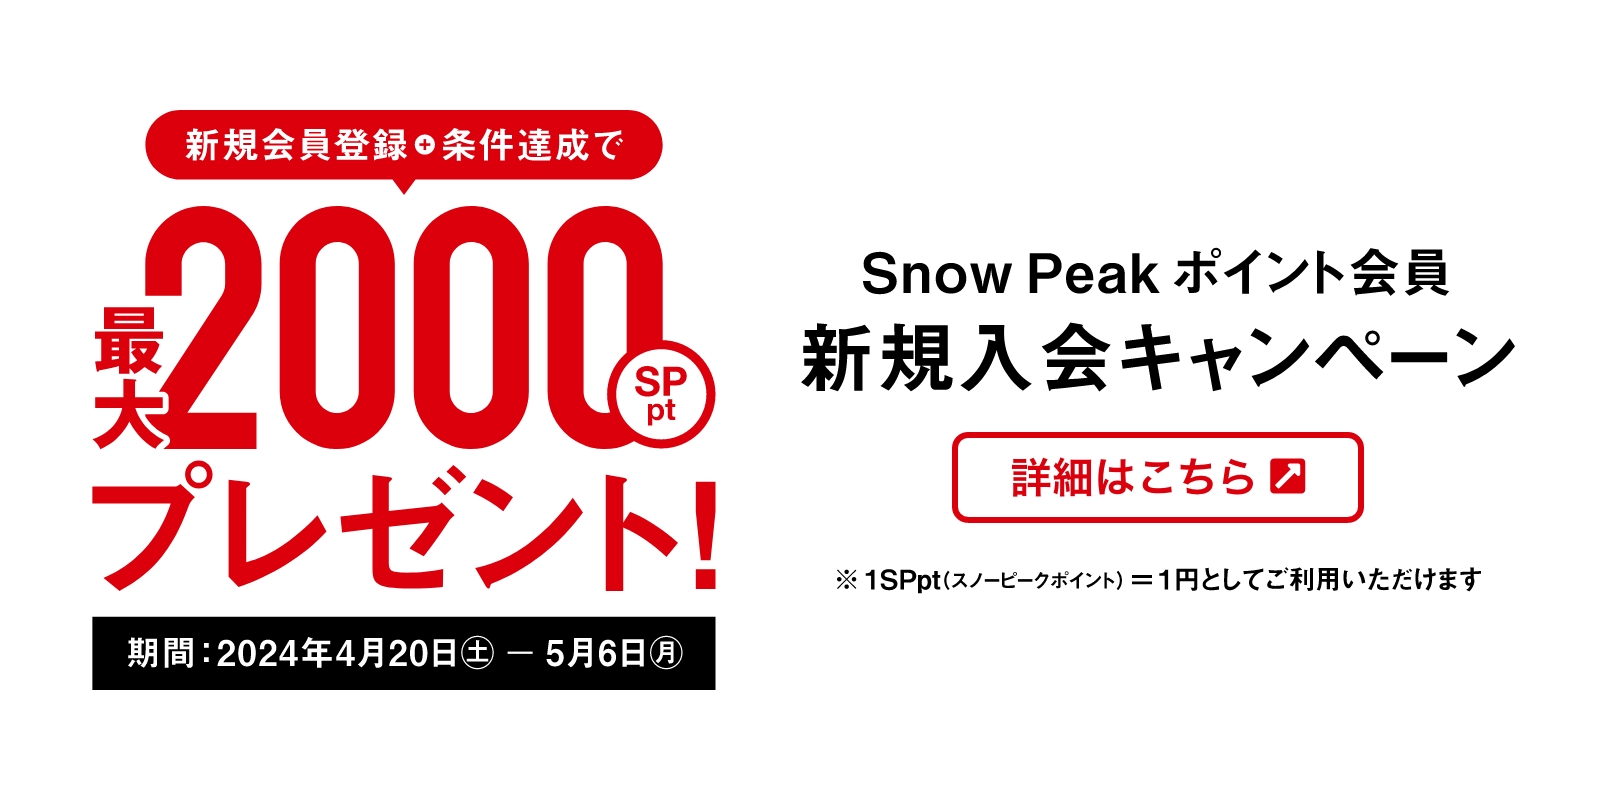 新規会員登録+条件達成で 最大2000 Snow Peakポイントをプレゼント！ 詳細はこちら